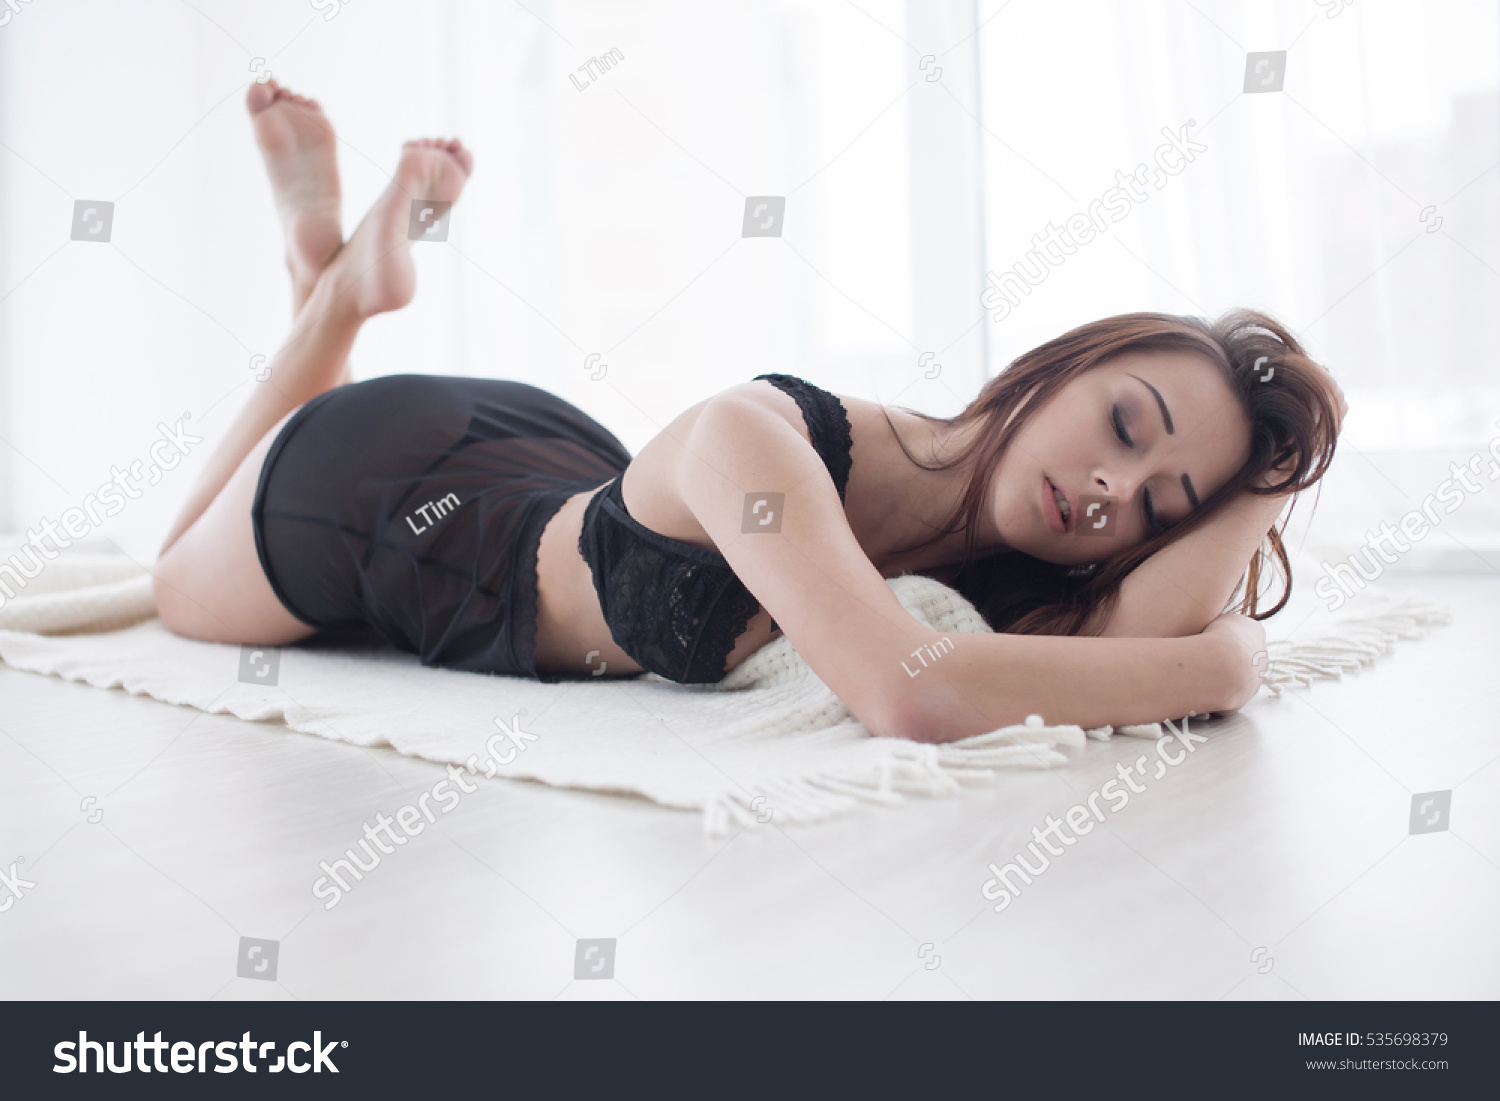 Erotic sleep